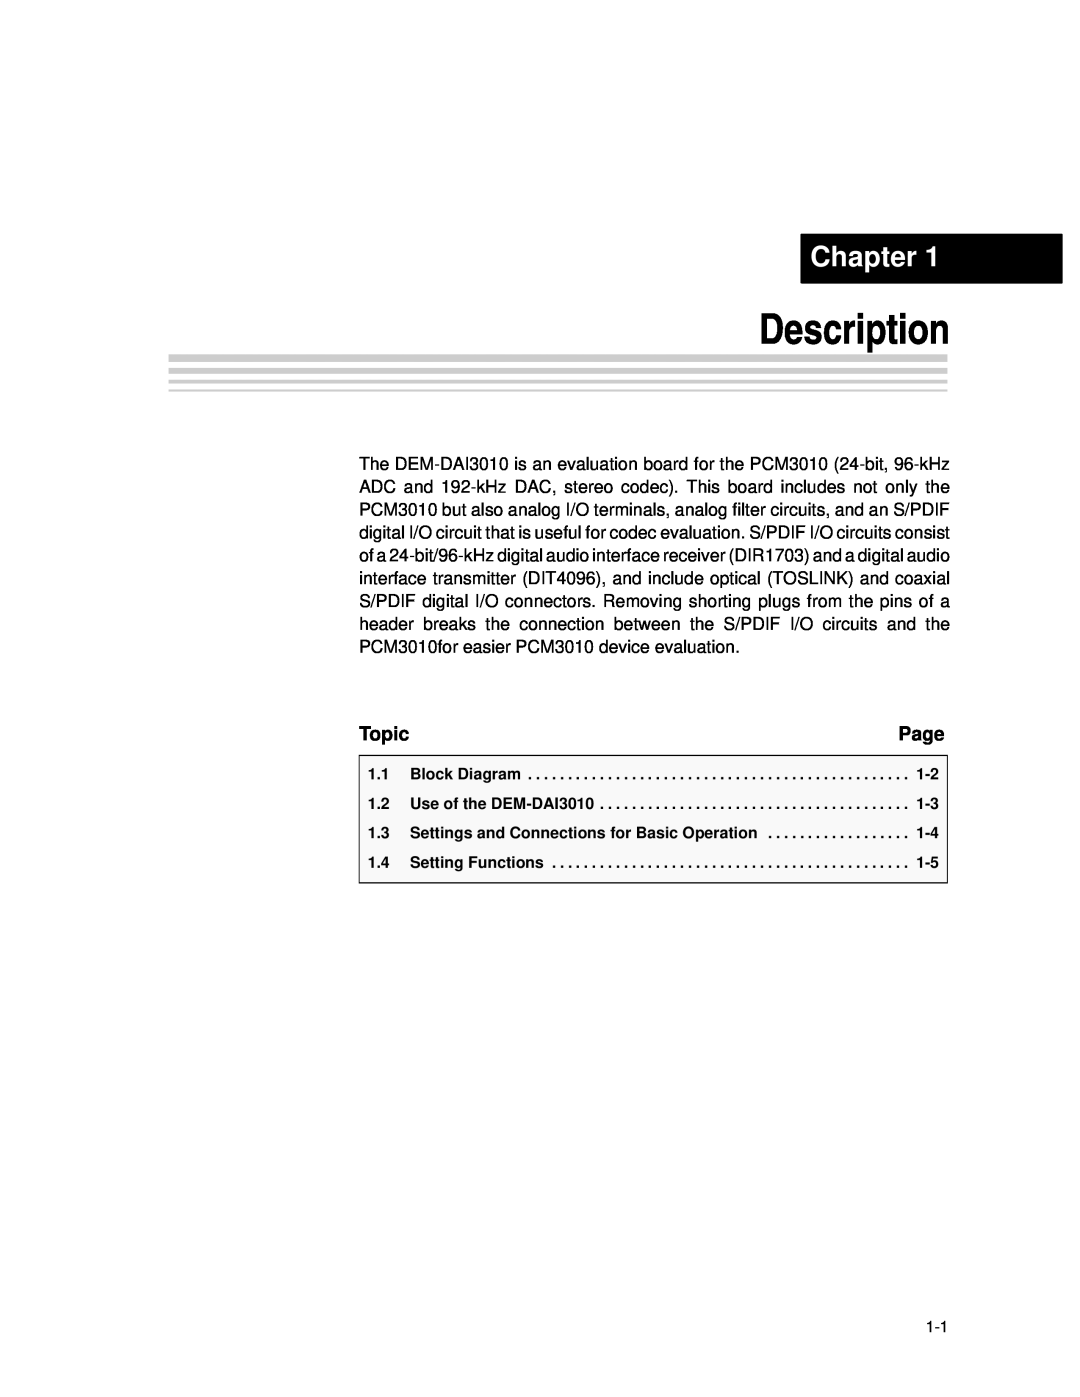 Texas Instruments DEM-DAI3010 manual Description, Chapter, Topic 